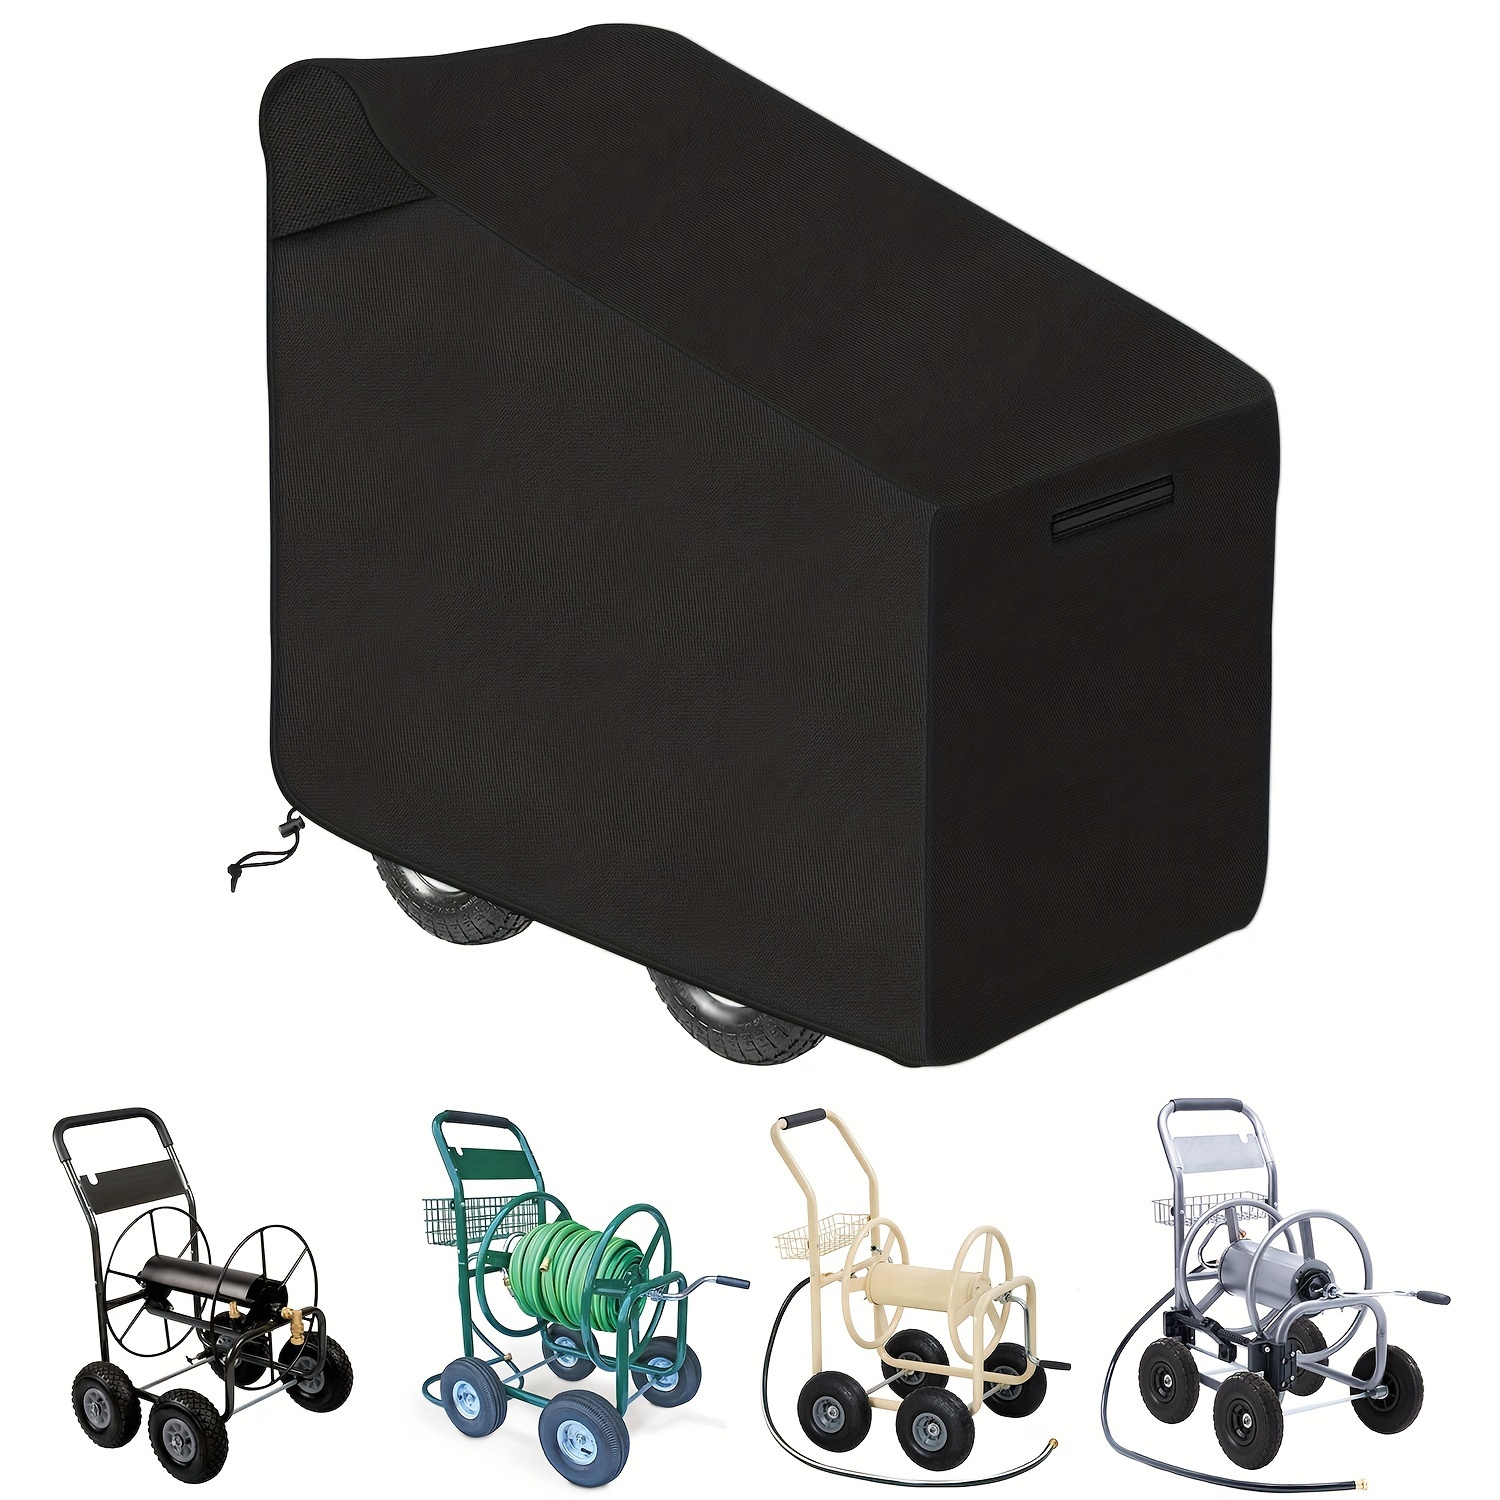 1pc Garden Hose Reel Cart Cover Outdoor Hose Cart Covers For Hose